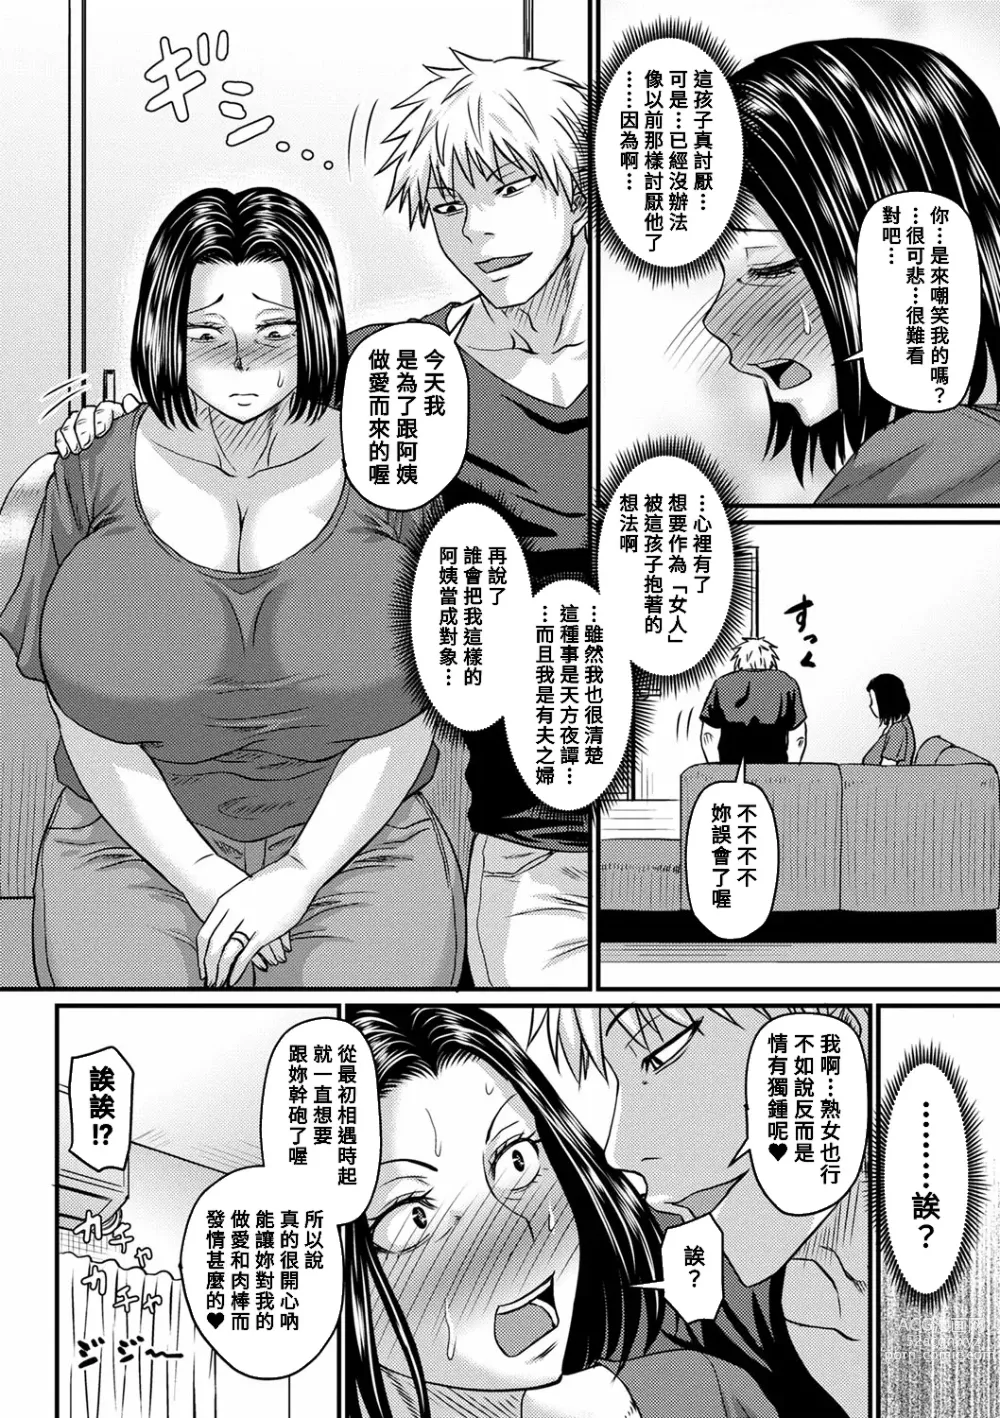 Page 8 of manga Mitsuyo-san no Shiawase Sex